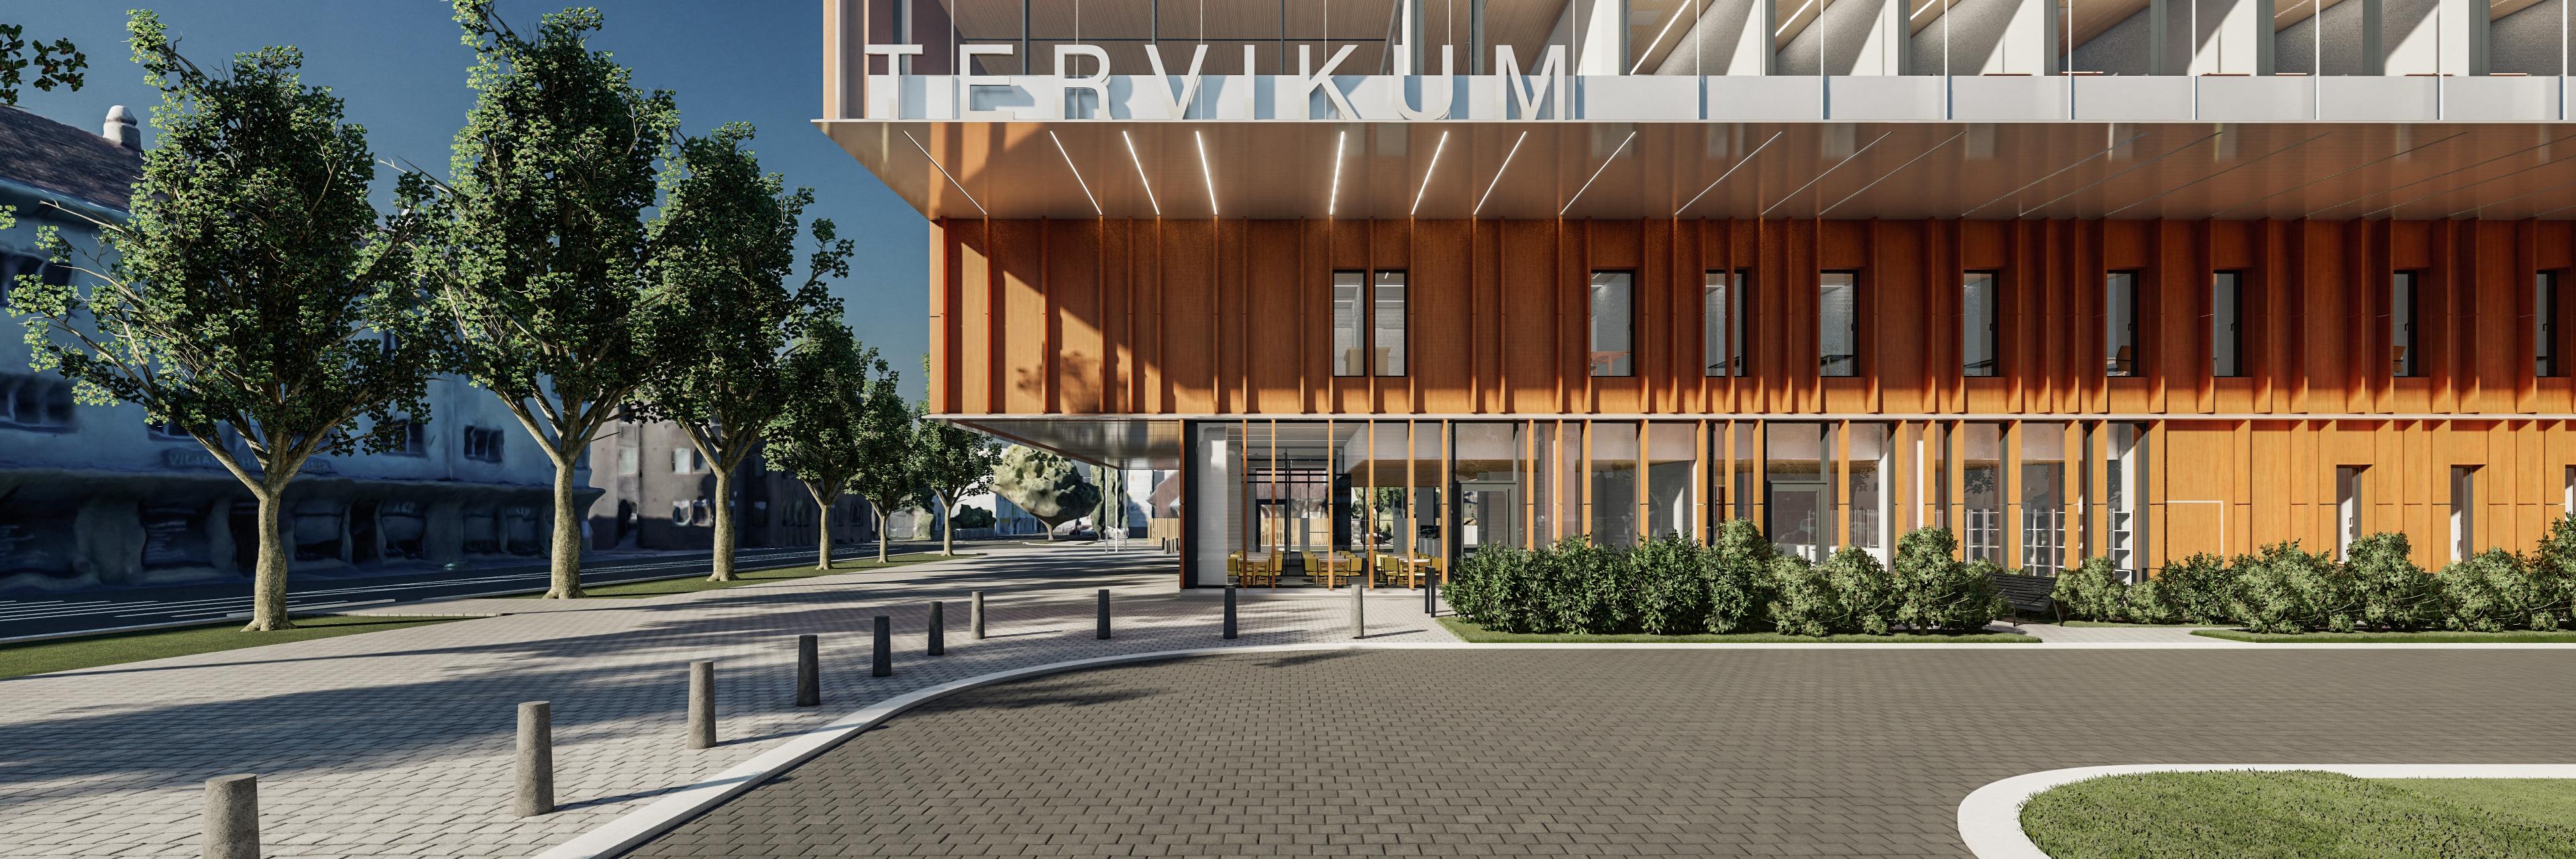 Viljandi haigla ja tervisekeskus Tervikum eskiis